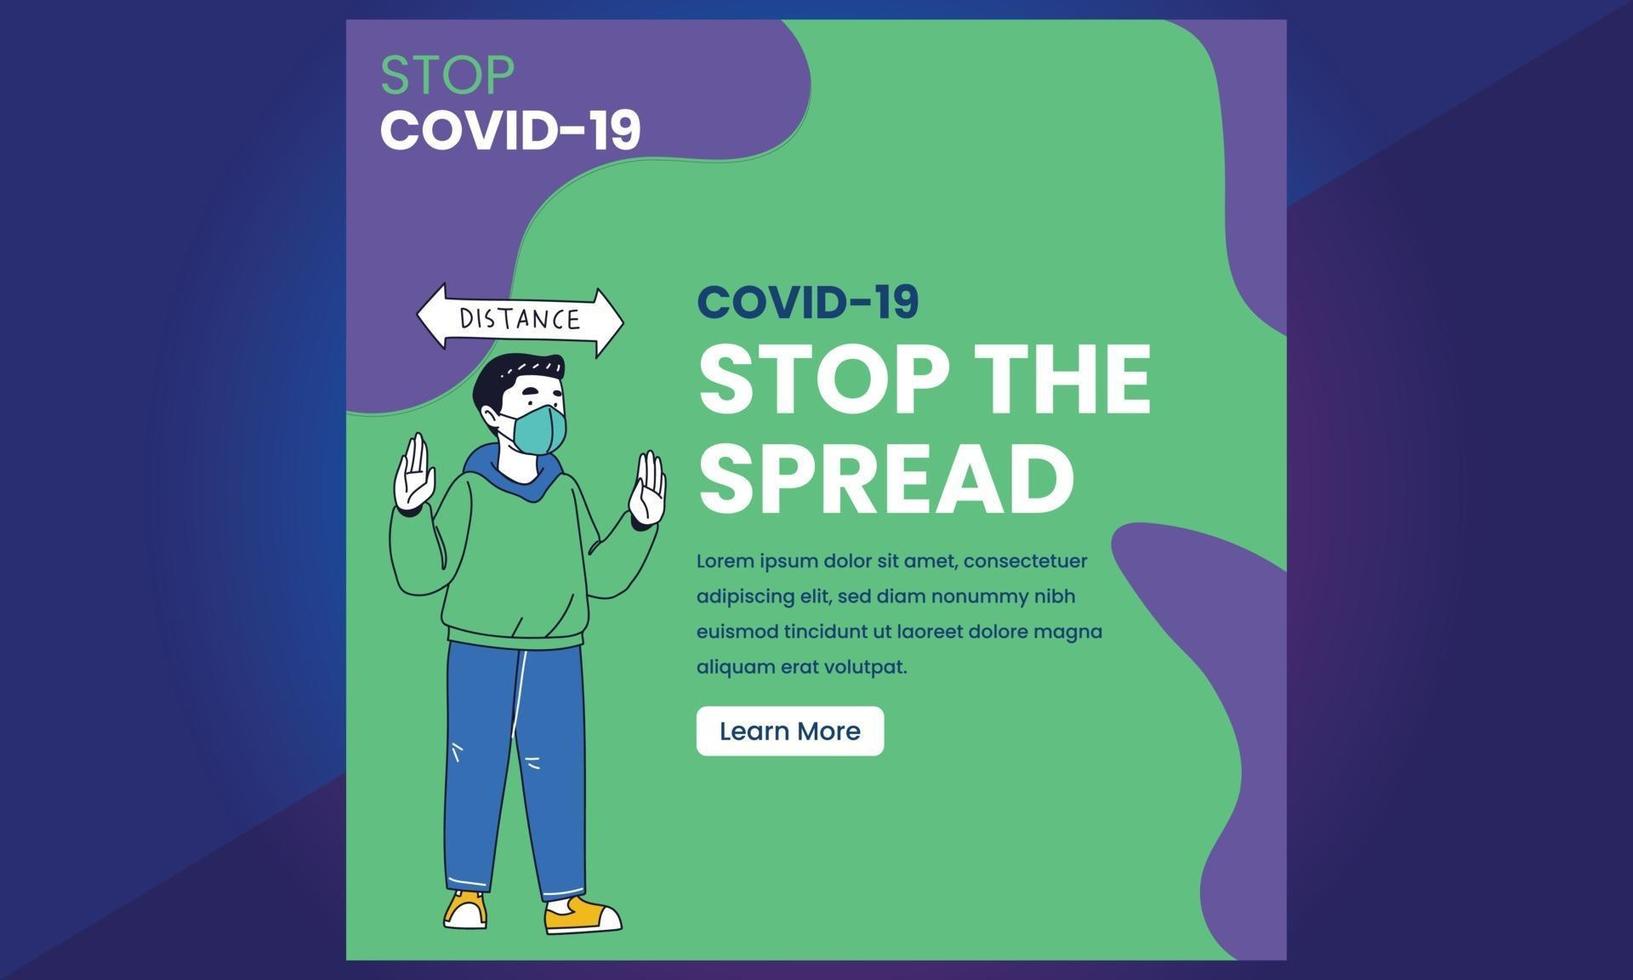 virus covid 19 corona, redes sociales de la vacuna contra el virus corona vector